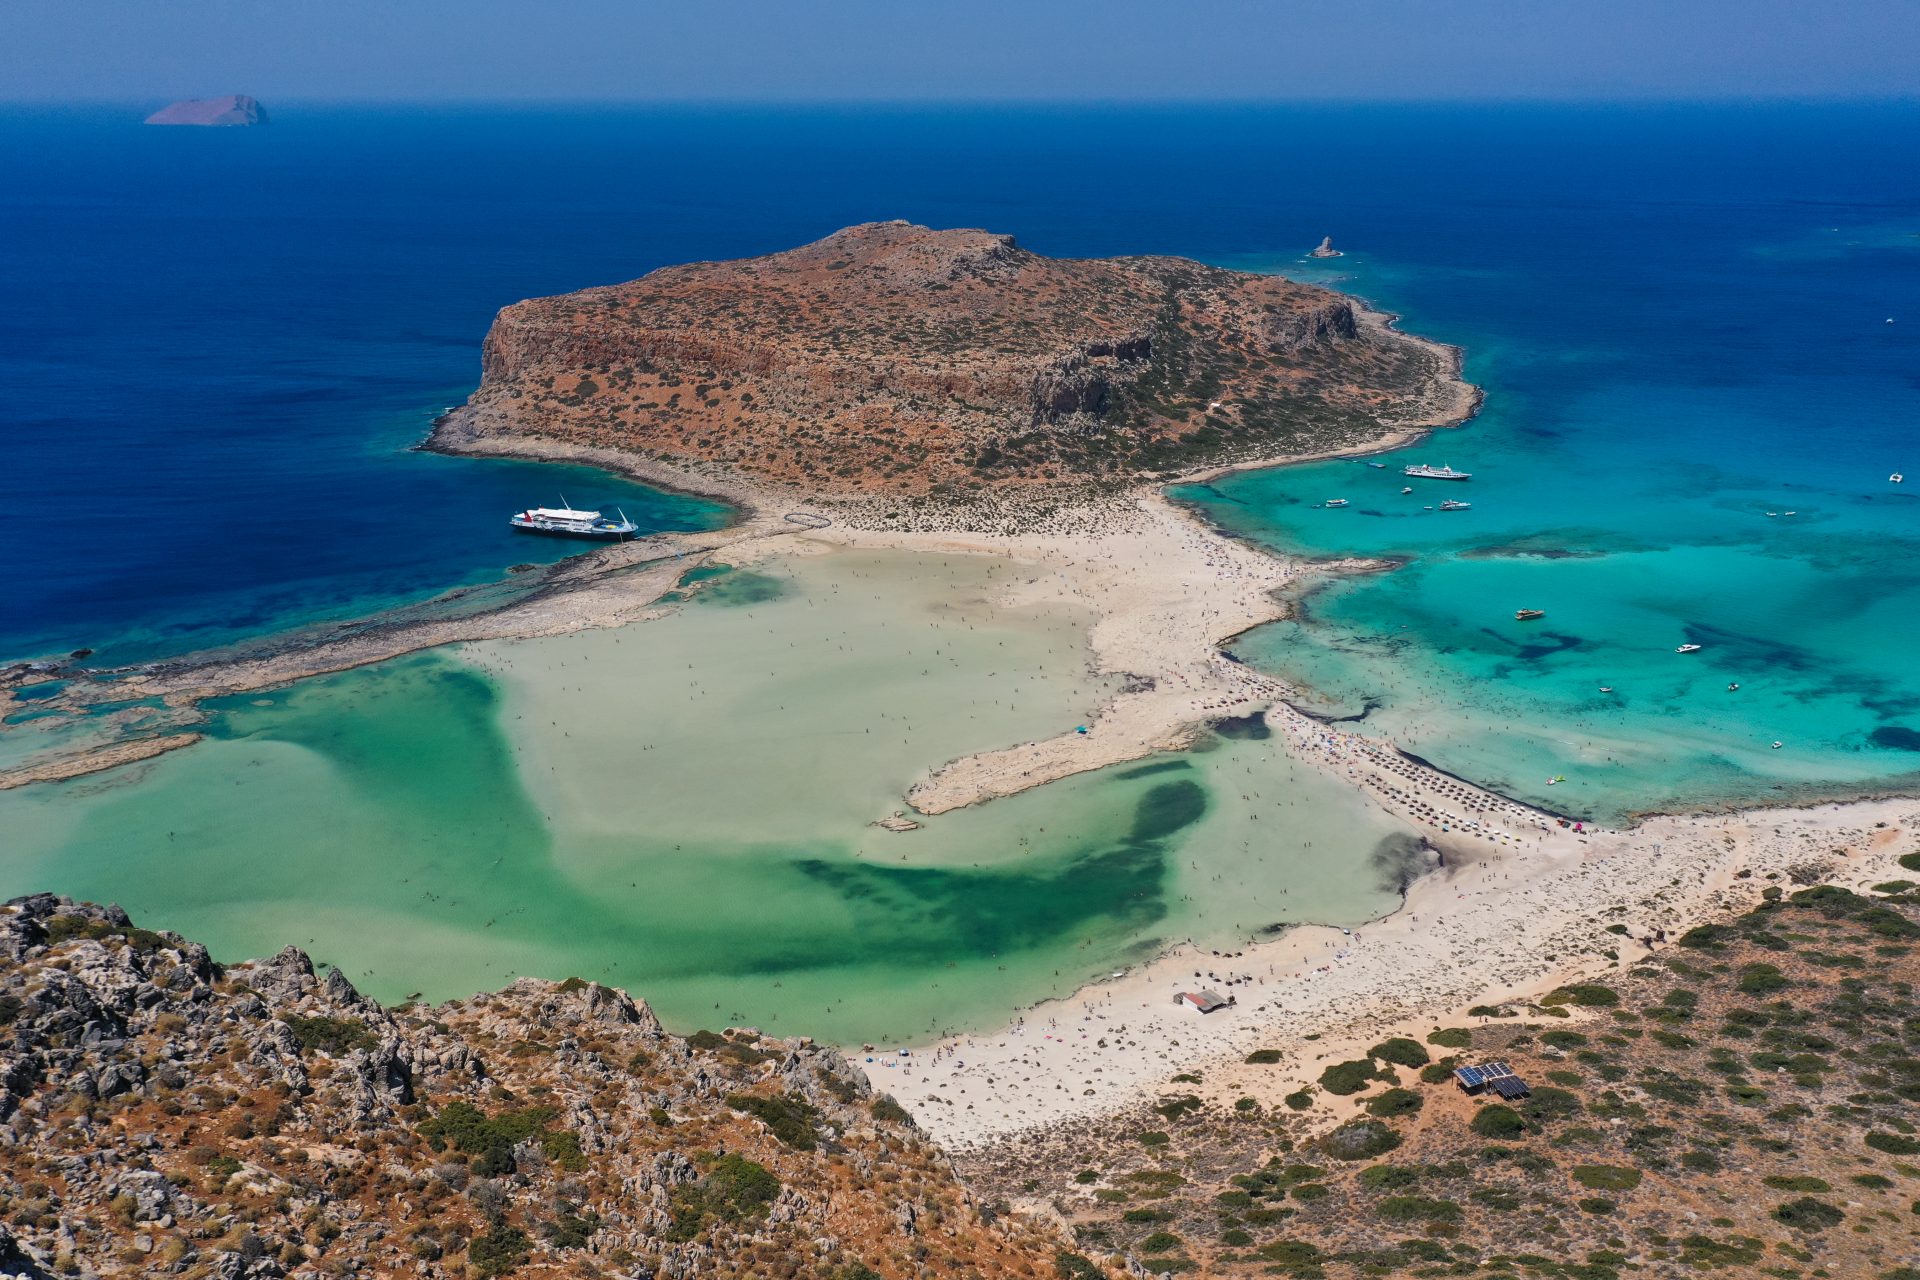 25: Balos Lagoon - Crete, Greece